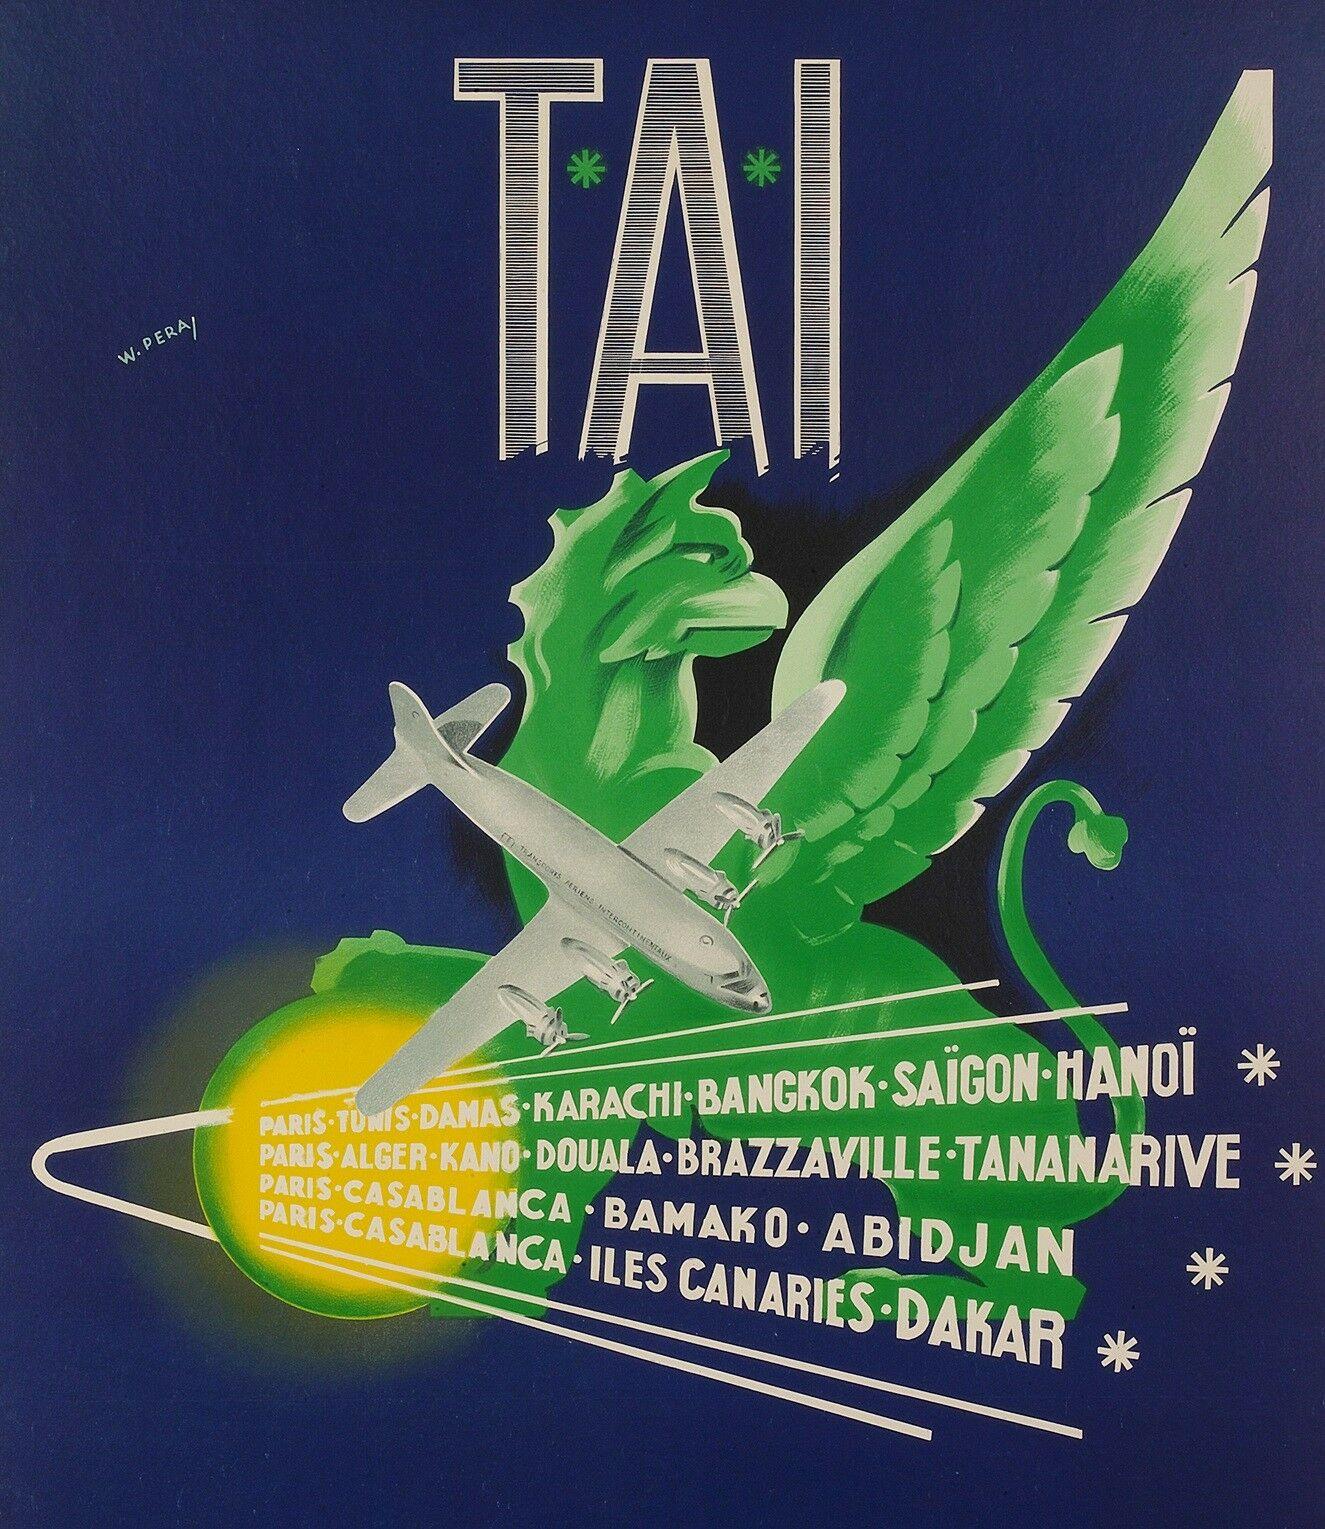 Affiche d'aviation originale-W. Pera-Tai-Afrique-Asie-Indochine, c.1950

Transport Aériens Intercontinentaux (TAI) était une compagnie privée française créée en 1946 et basée à l'aéroport d'Orly, à Paris. En 1963, elle a fusionné avec l'Union.